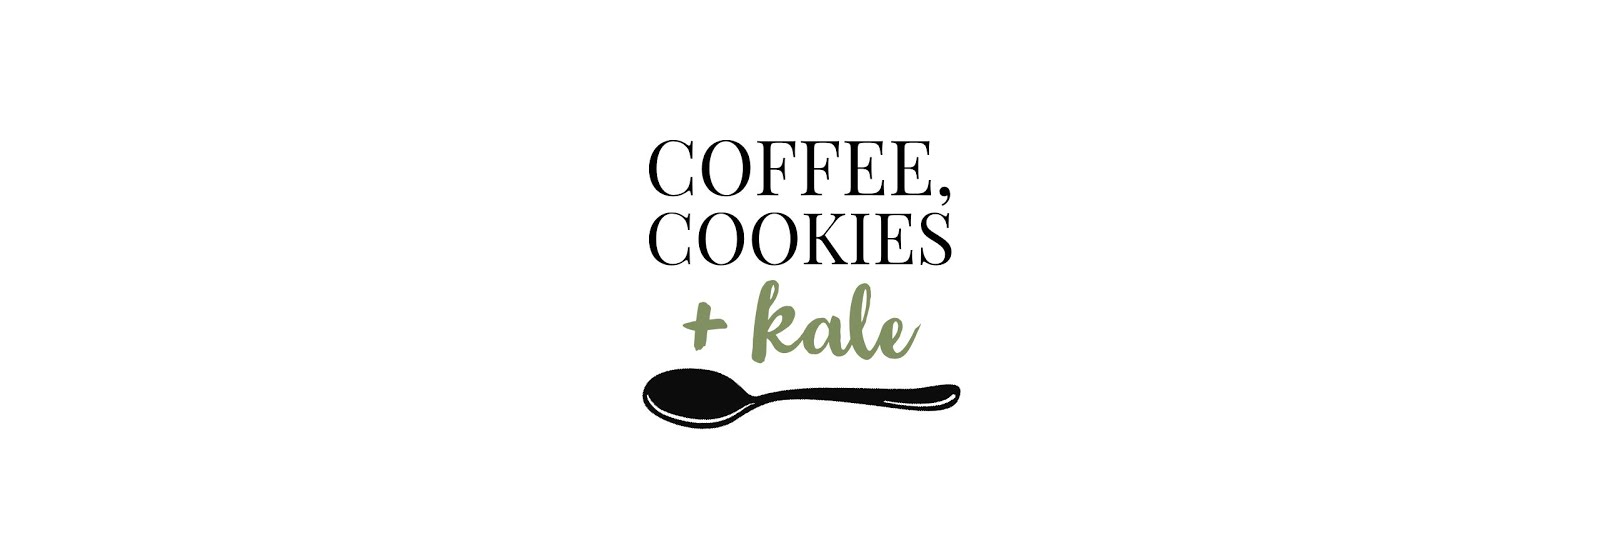 Coffee, Cookies + Kale